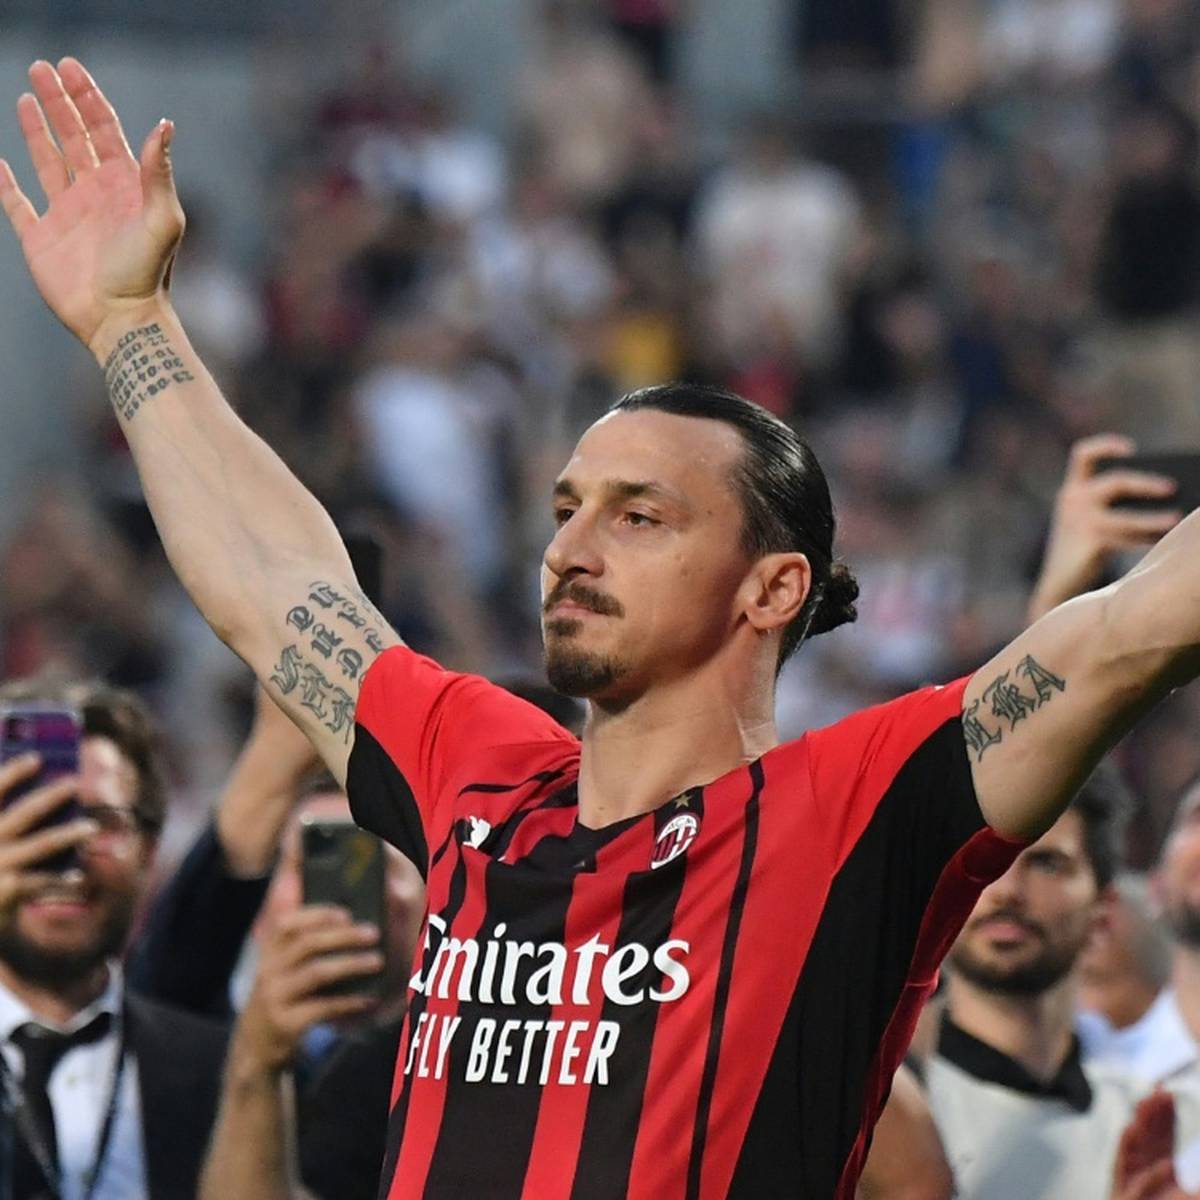 Zlatan Ibrahimovic wird seine Karriere offenbar fortsetzen. Der Schwede soll sich mit dem AC Mailand auf ein neues Arbeitspapier geeinigt haben.